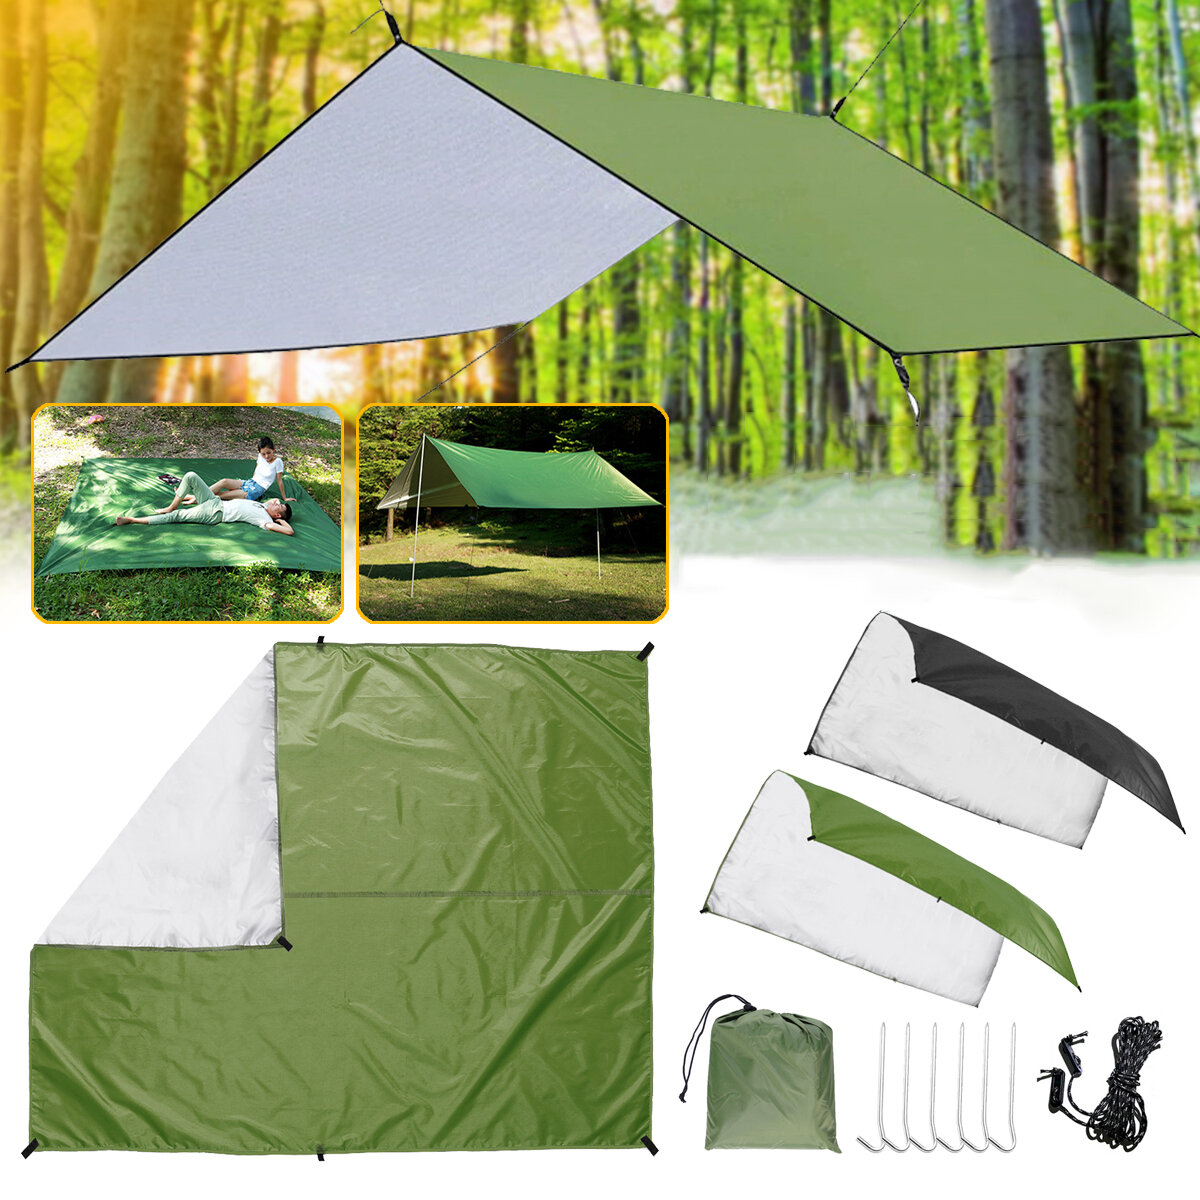 Wasserdichtes Sonnensegel von 3x3 Metern für Sonnenschutz, Picknickmatte für Outdoor-Aktivitäten, Camping, Strand, Garten oder Terrasse.